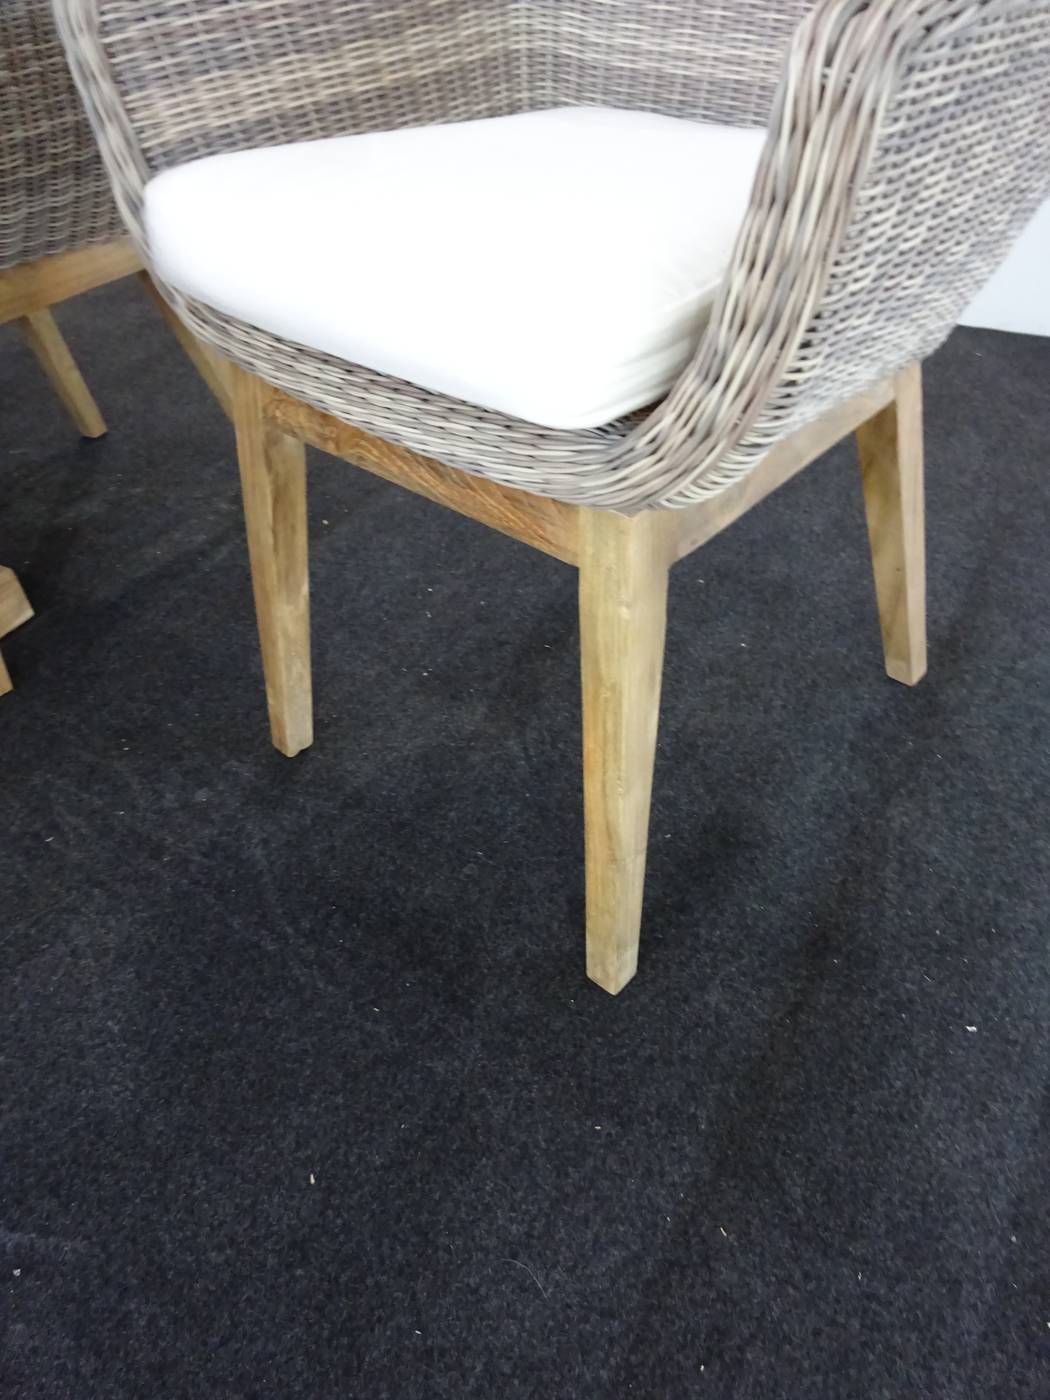 Conjunto Madera Teka Bolero - Conjunto para jardín de teka: 4 sillones con cojines de ratán sintético y madera de teka + 1 mesa de madera de teka de 220 cm